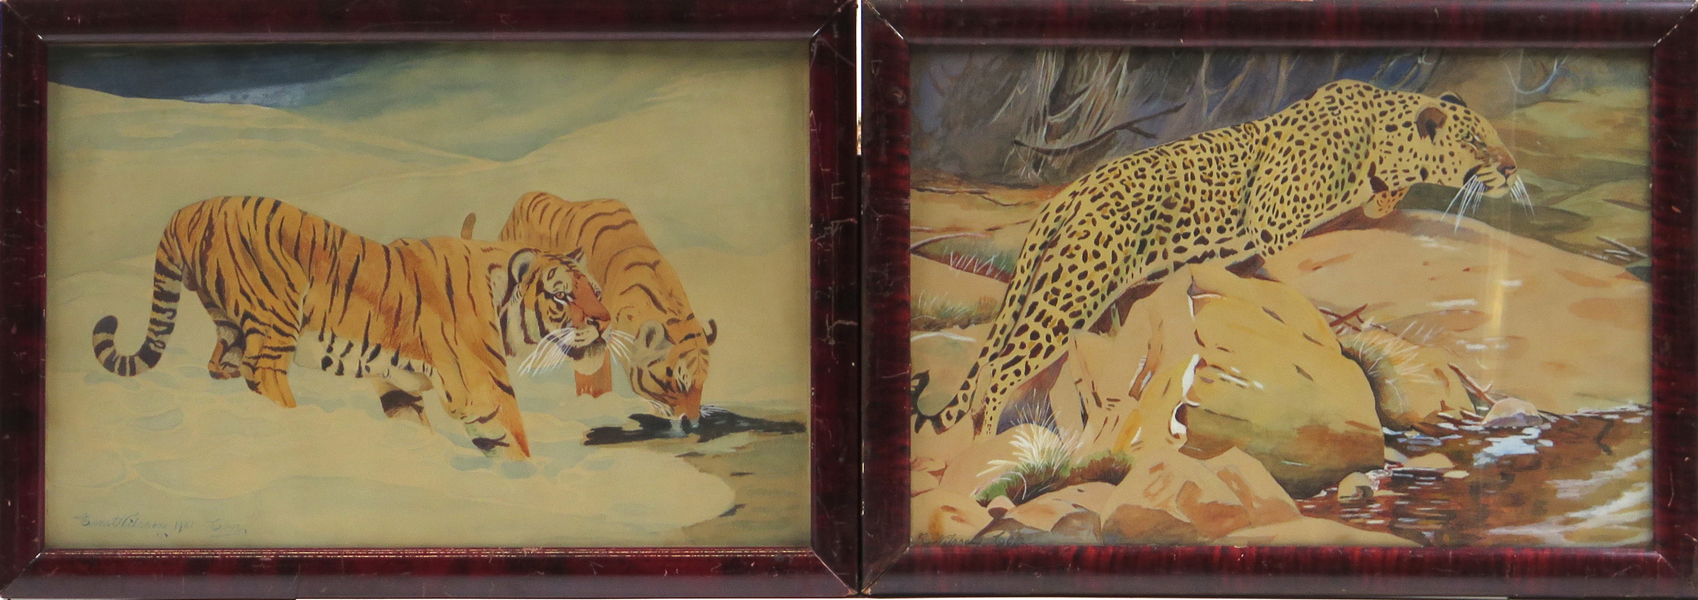 Kuhnert, Wilhelm, kopia efter, akvareller, 1 par, "Manchurisk tiger" respektive "Leopard", signerade Ernst Nilsson, synlig pappersstorlek 28 x 42 cm_27708a_lg.jpeg